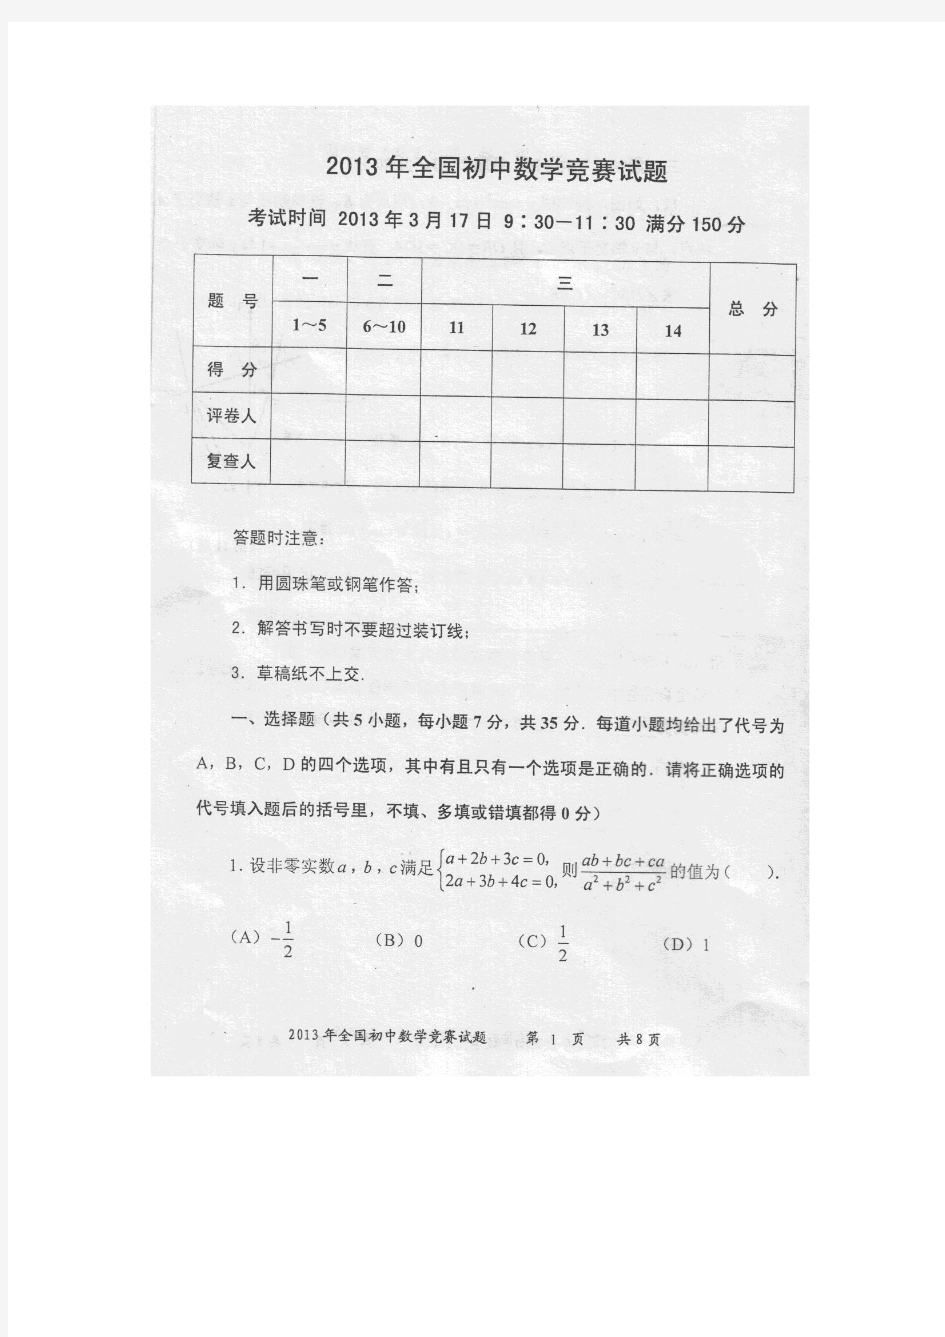 2013全国初中数学竞赛试卷(福建赛区)